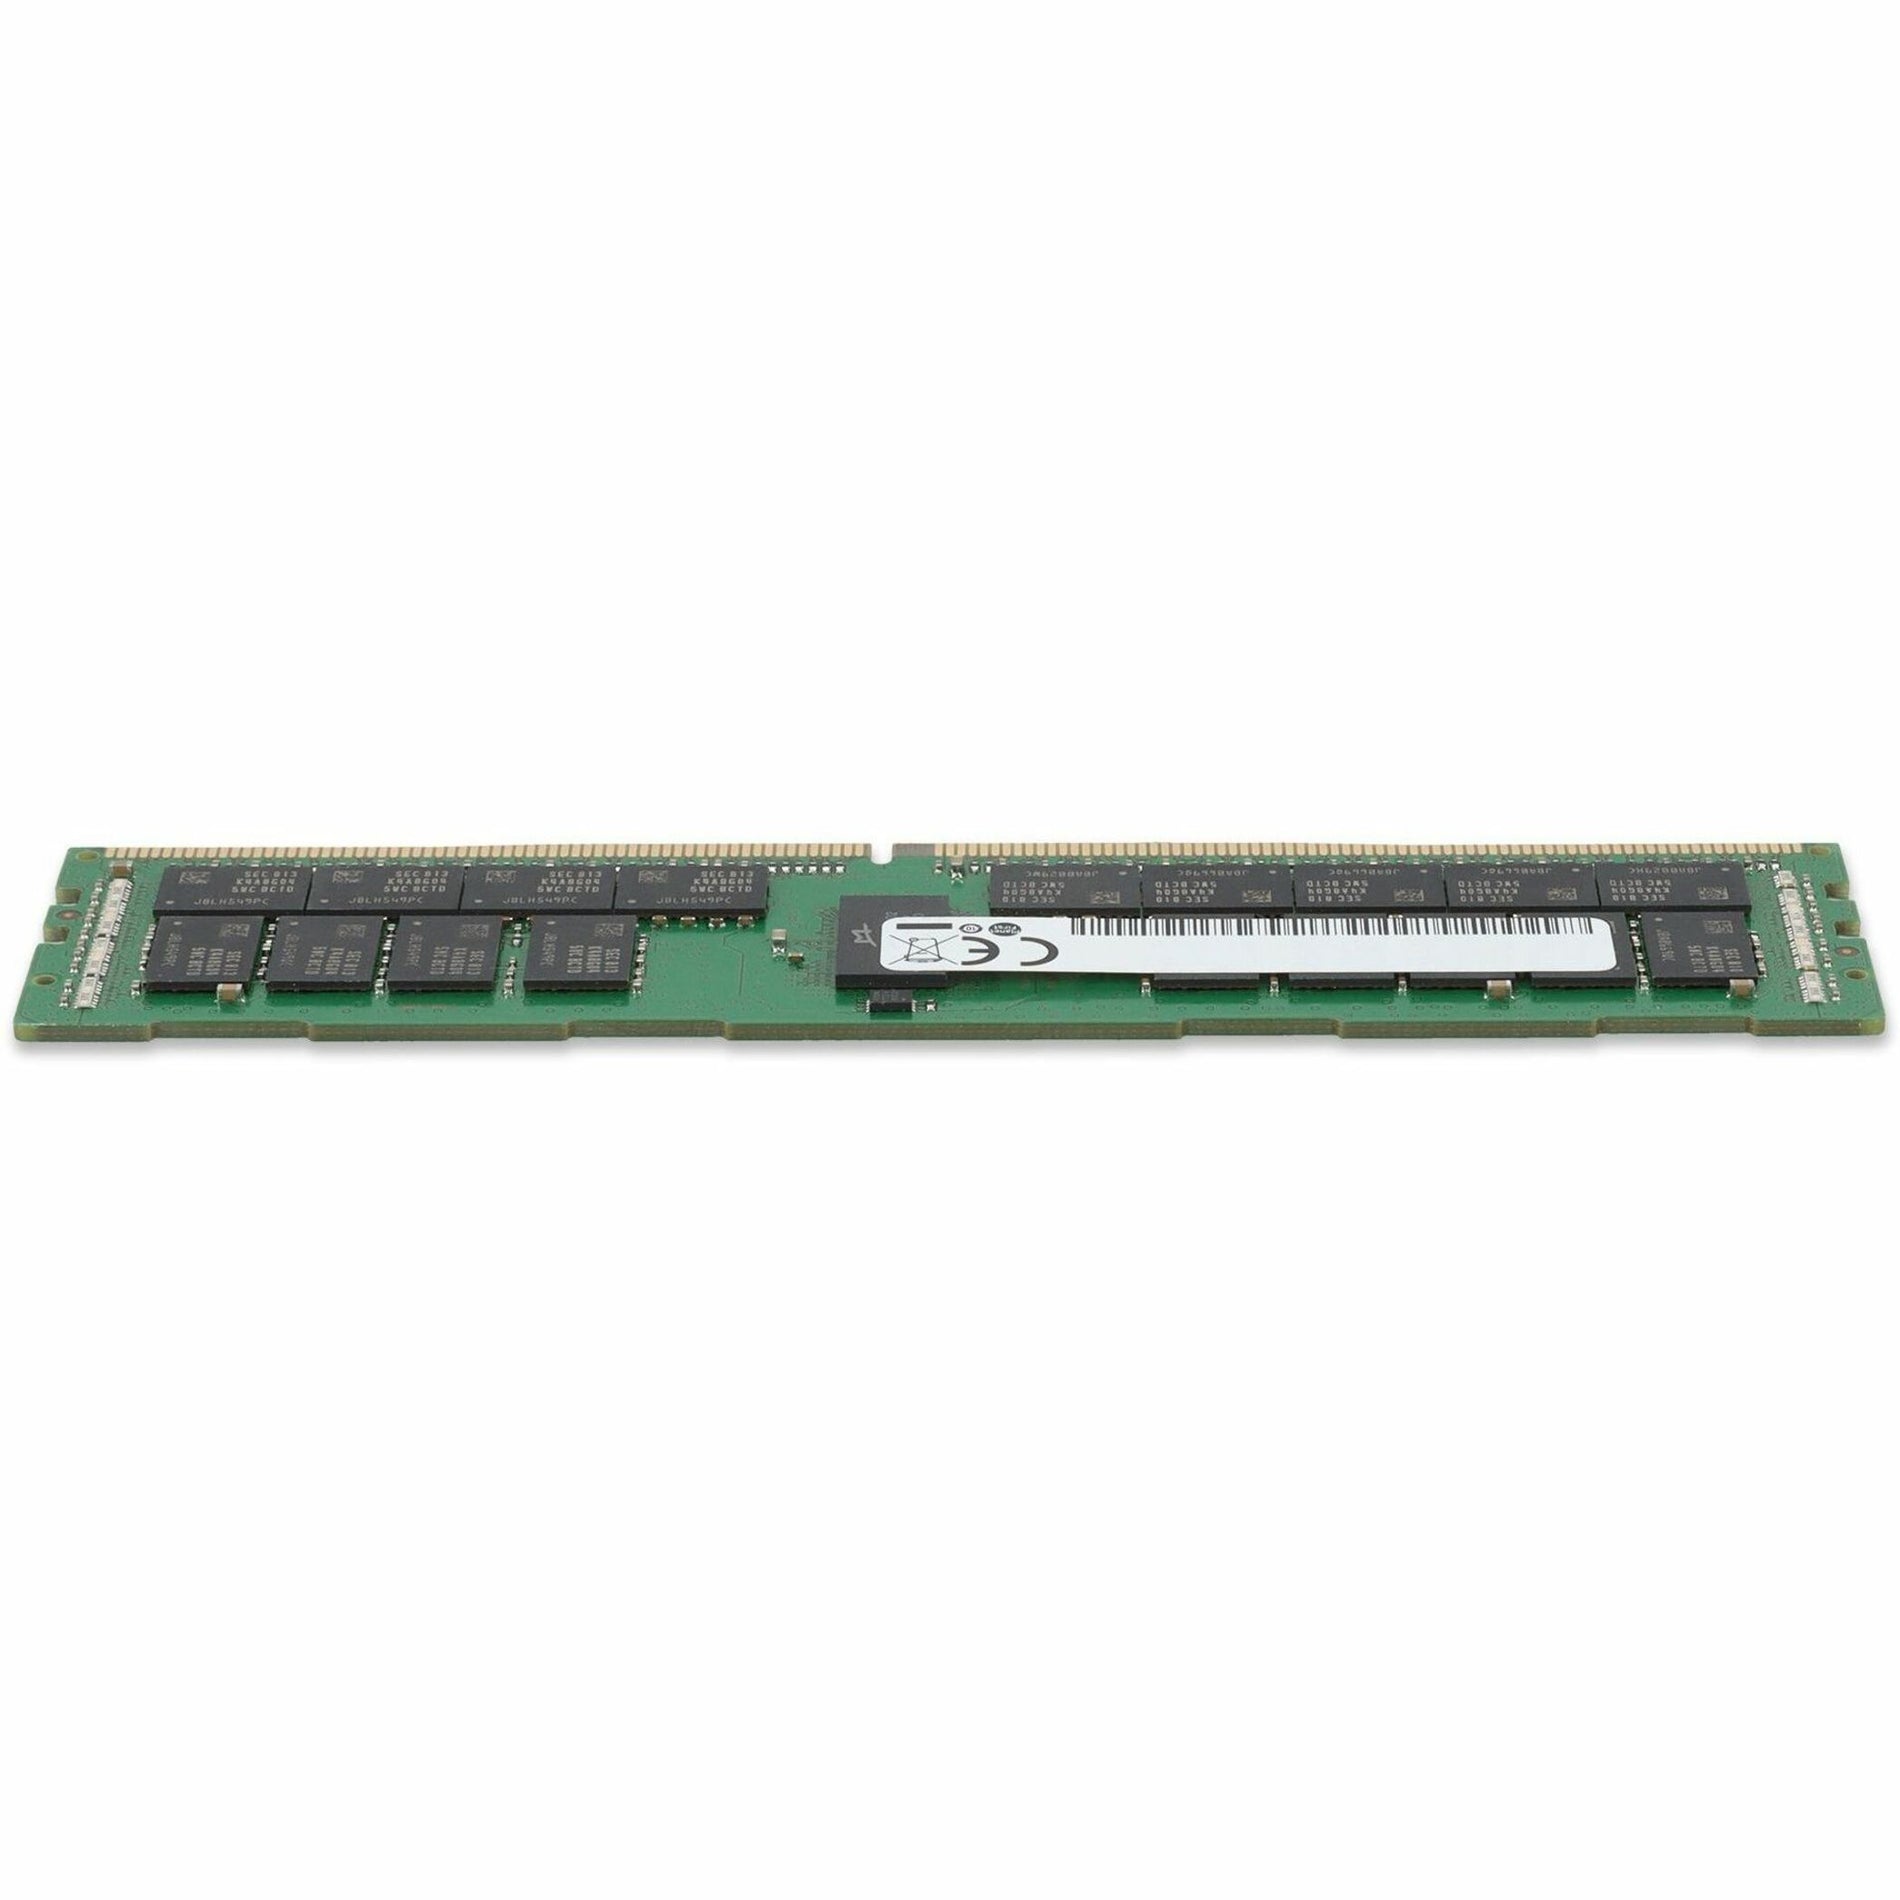 AddOn A9781929-AM 32GB DDR4 SDRAM Memory Module, Lifetime Warranty, TAA Compliant, RoHS & WEEE Certified